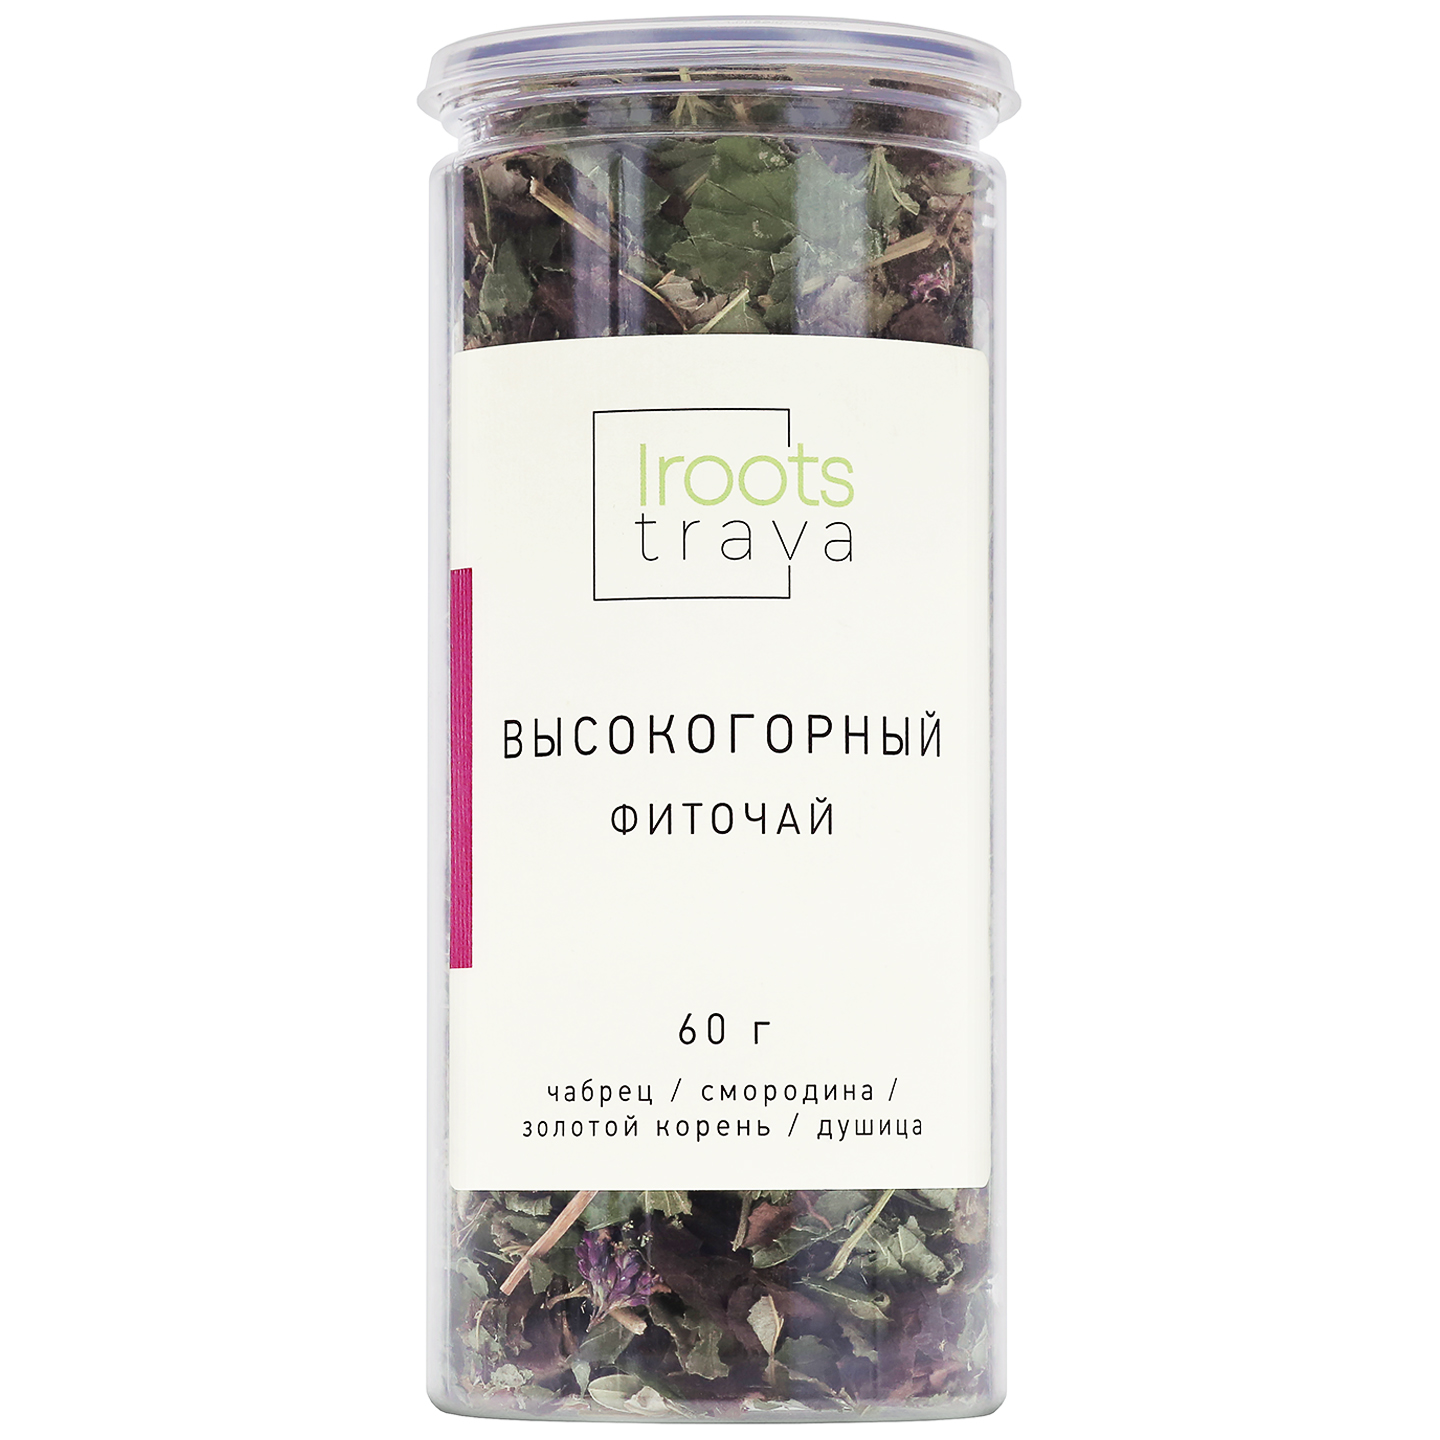 Чай Травяной iROOTS TRAVA Высокогорный с Душицей, Чабрецом и Лабазником, 60 г